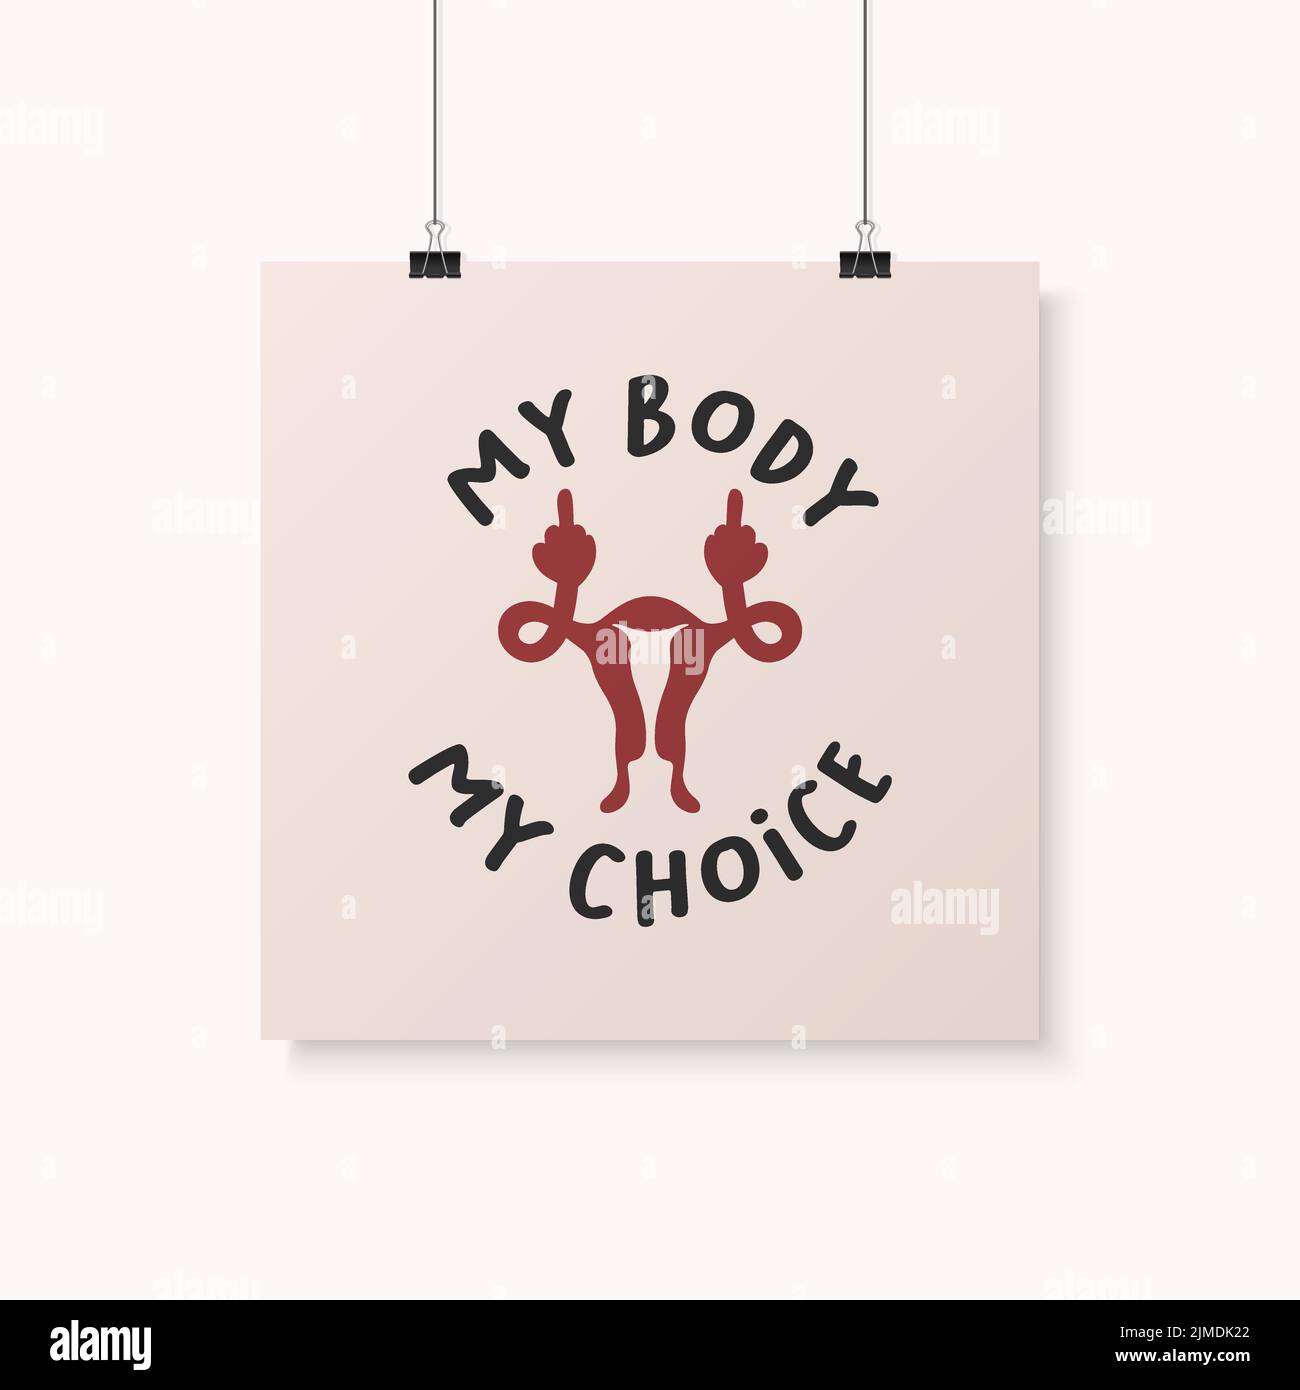 My Body My Choice Sign. WOME's Rights Poster, chiedendo accesso continuo all'aborto dopo il Ban sugli aborti, Roe vs Wade. Protesta, Feminismo Illustrazione Vettoriale